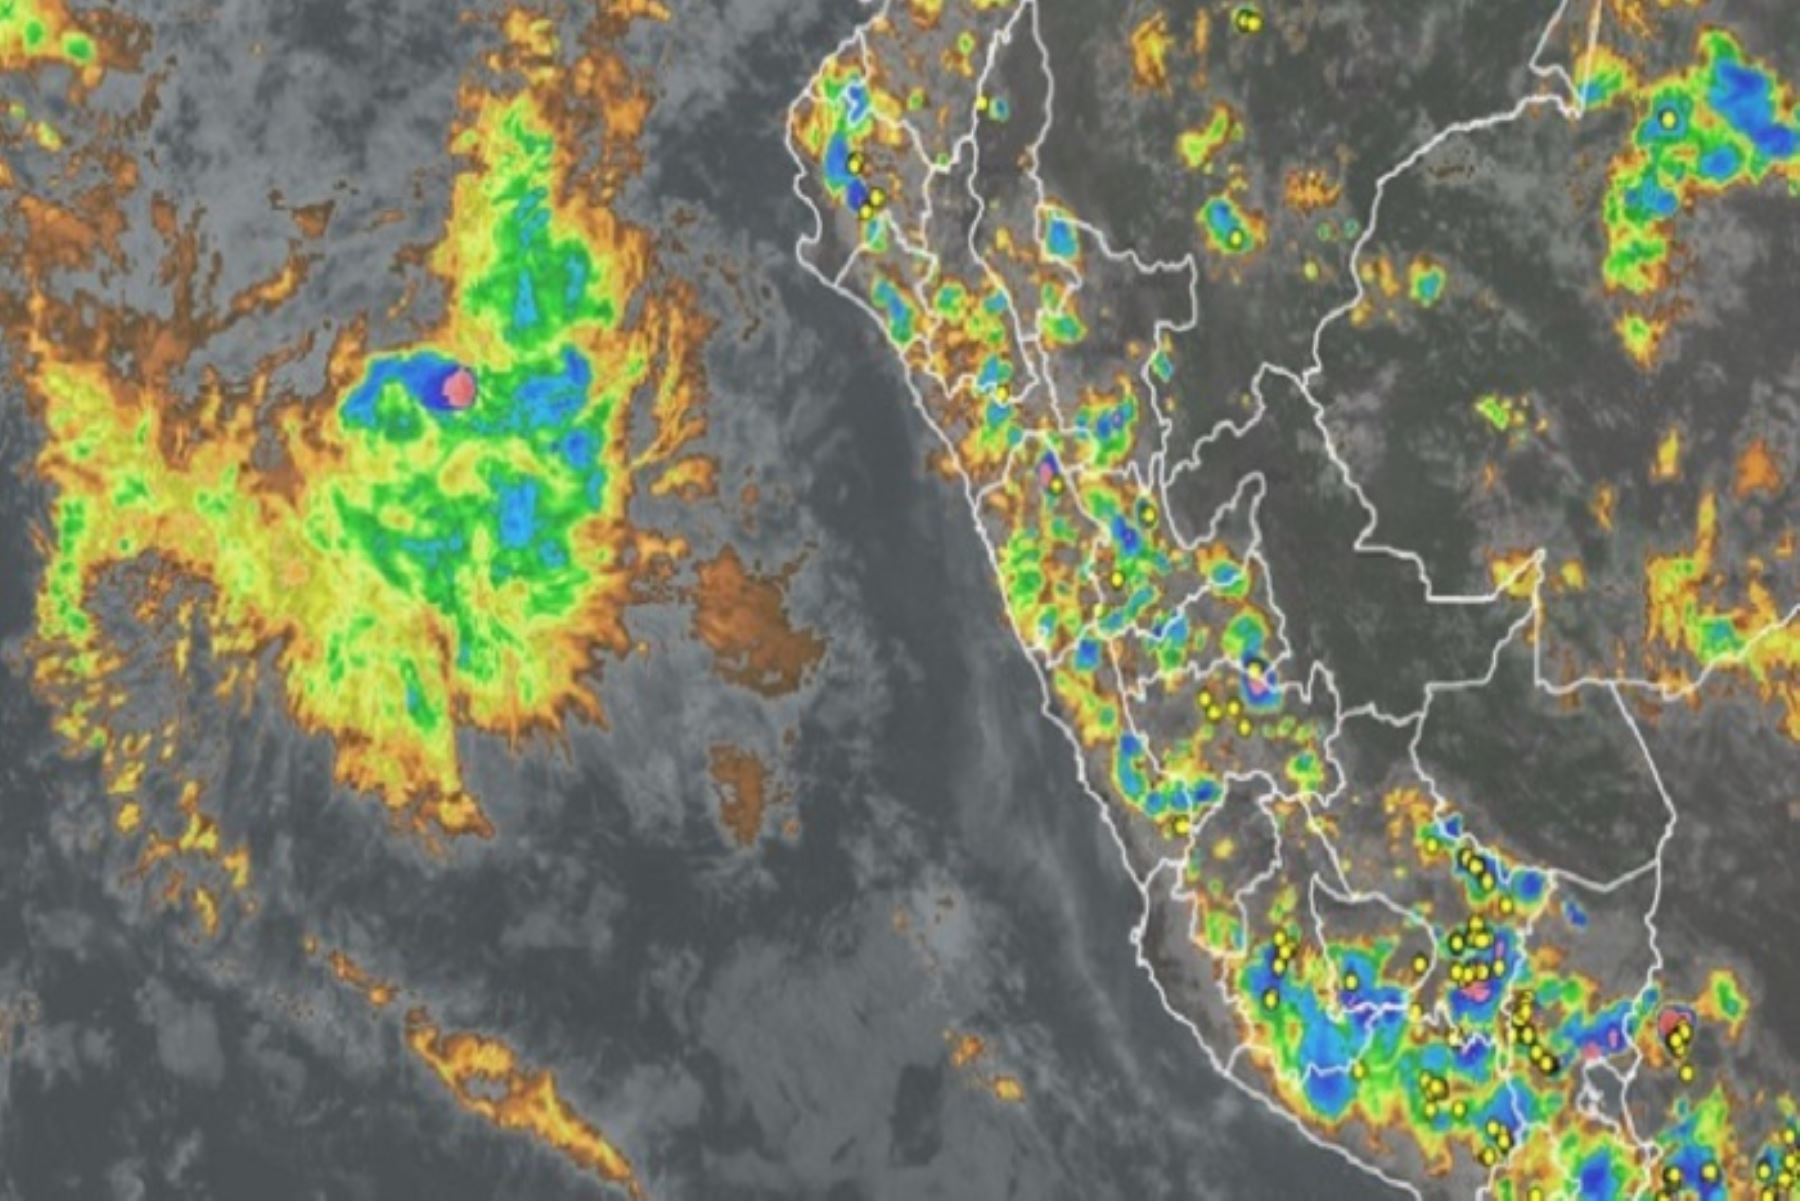 “Tenemos un ciclón que es un remolino de viento, no un huracán, que se ha configurado frente al norte del Perú", dijo Abraham Levy